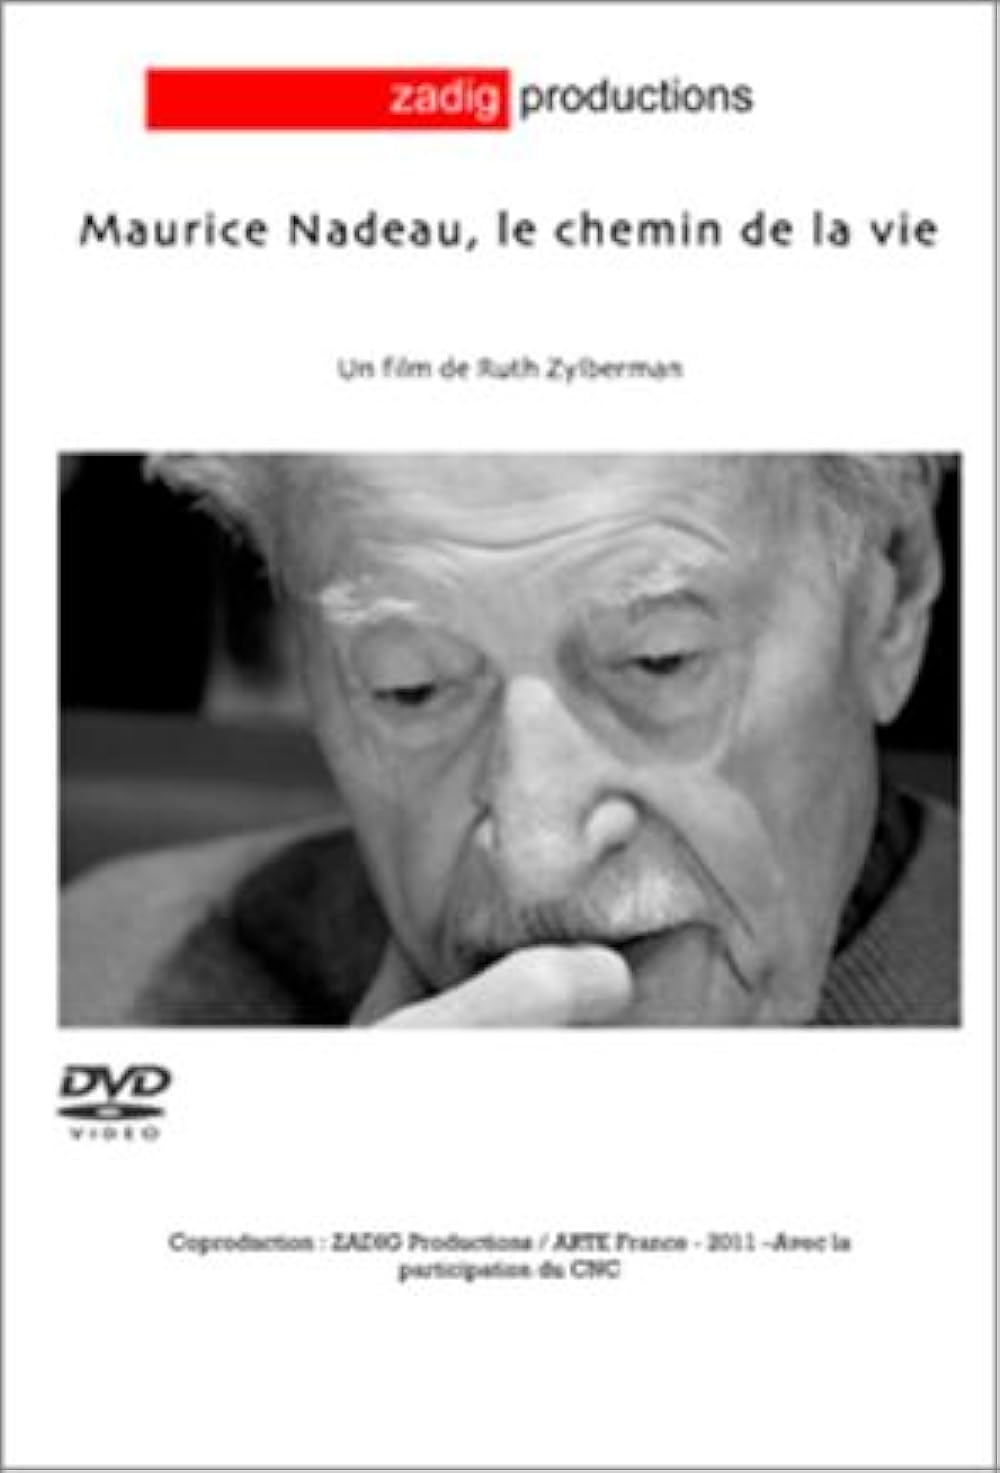 Maurice Nadeau, le chemin de la vie - Ruth Zylberman - © Zadig Productions - Le Lieu documentaire, Strasbourg